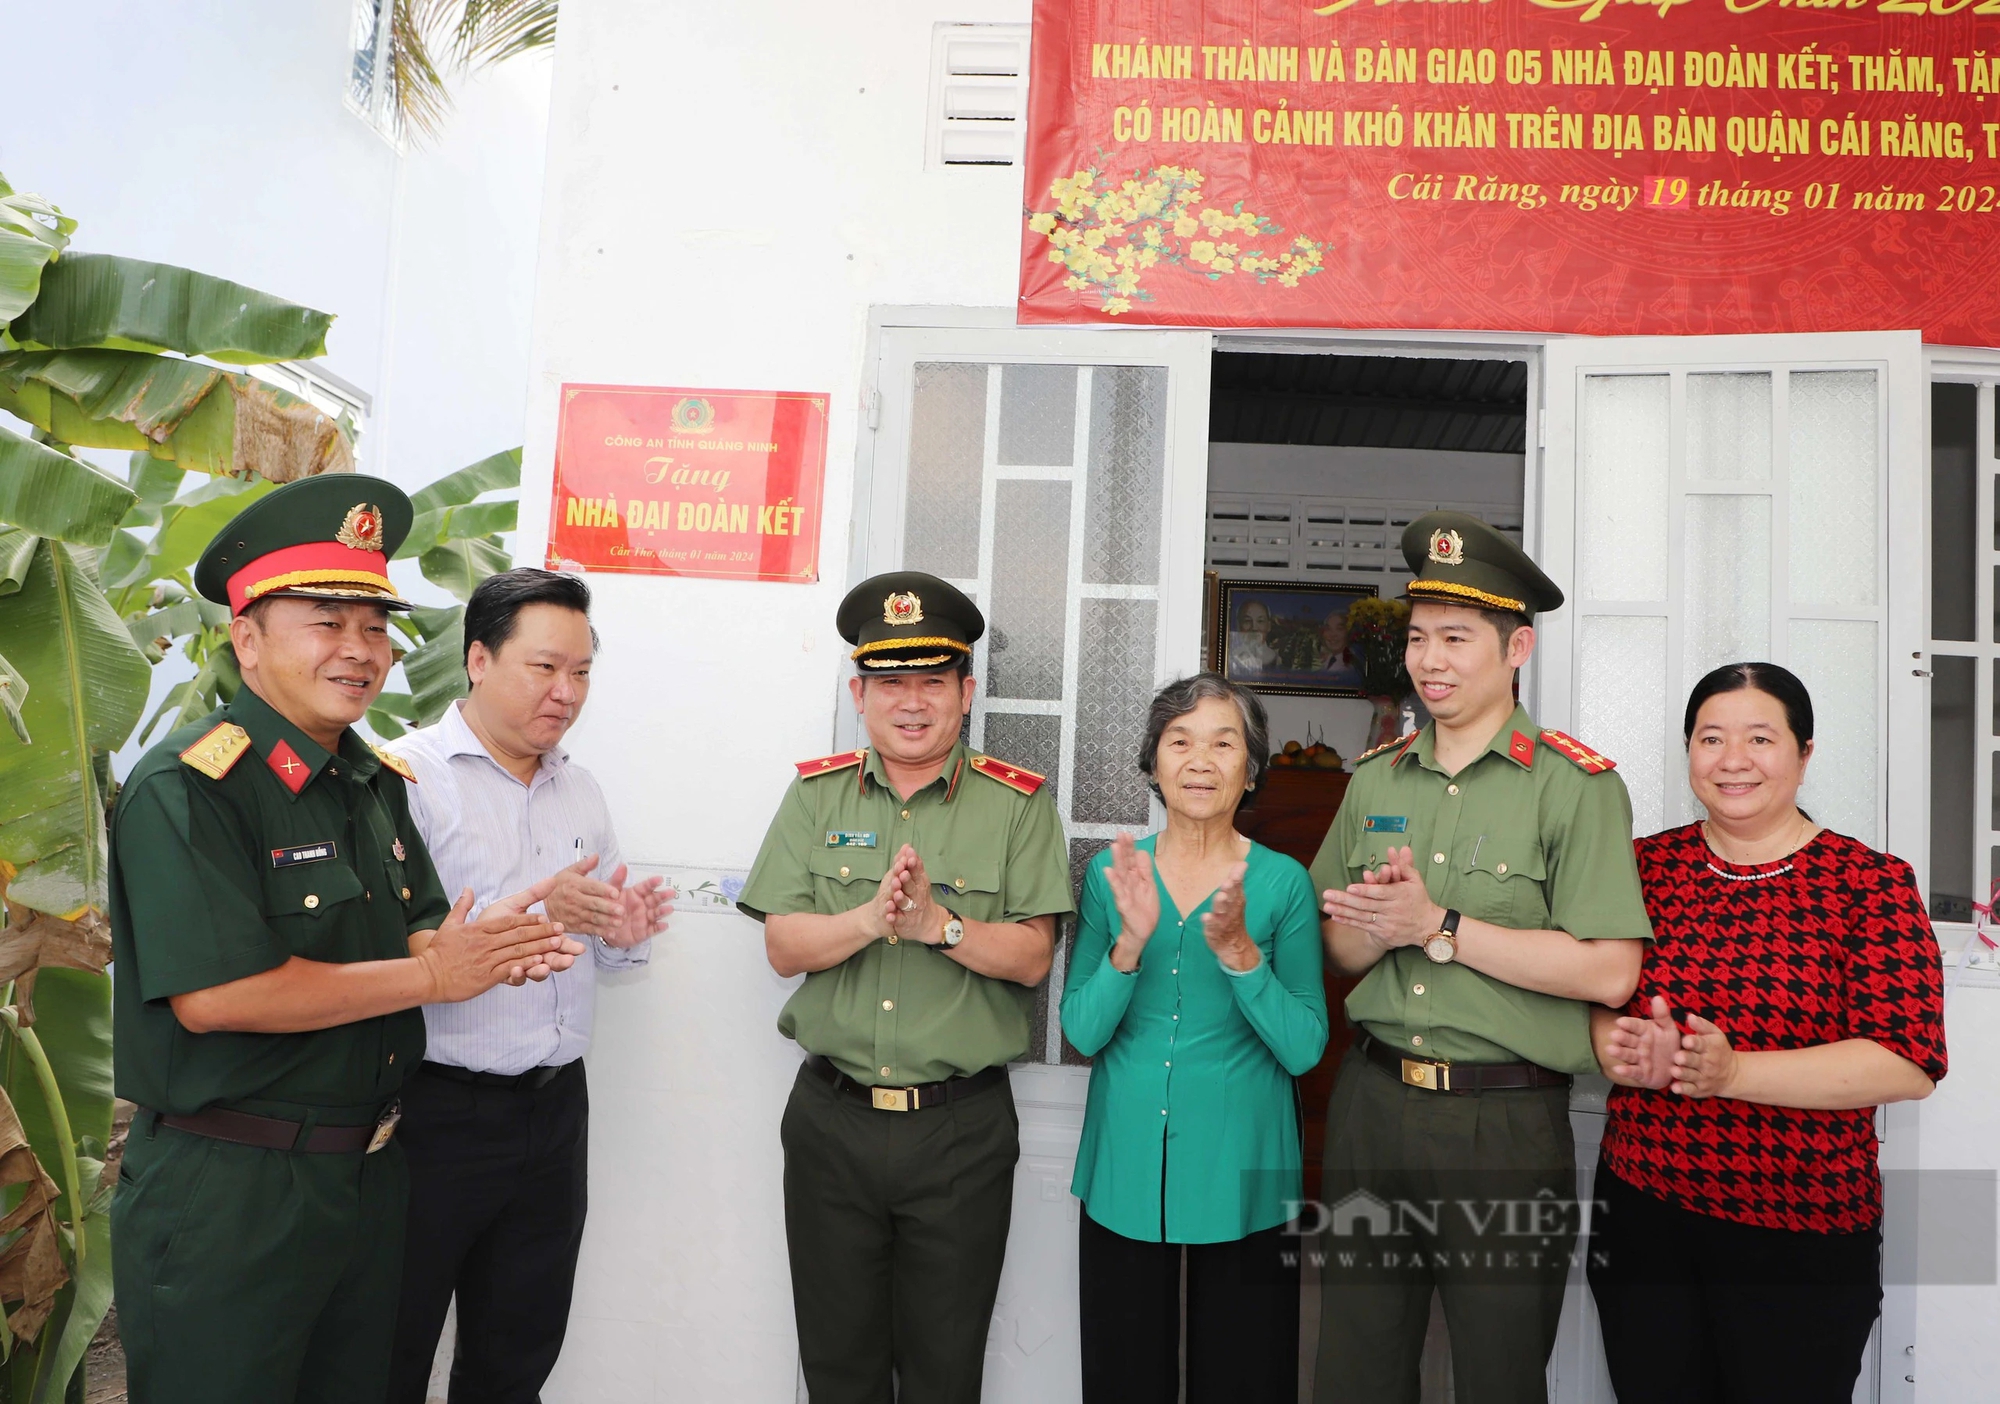 Thiếu tướng Đinh Văn Nơi trao nhà Đại đoàn kết và tặng quà Tết cho người dân có hoàn cảnh khó khăn ở Cần Thơ- Ảnh 2.